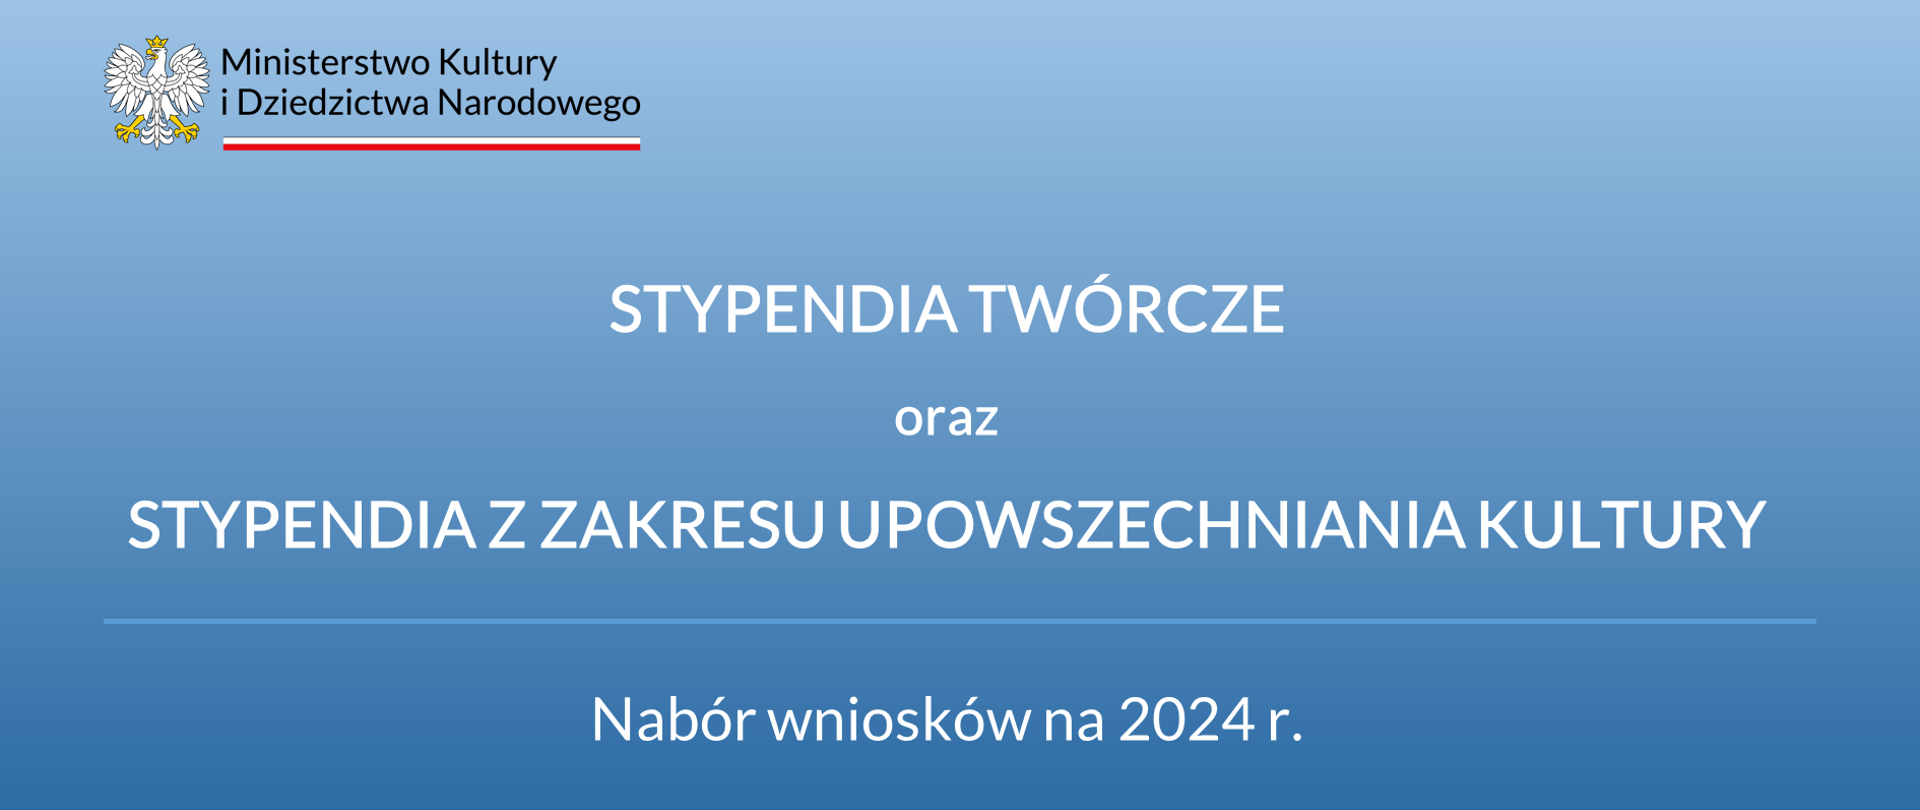 Stypendia Twórcze i Upowszechnienie kultury - nabór wniosków 2024 r.